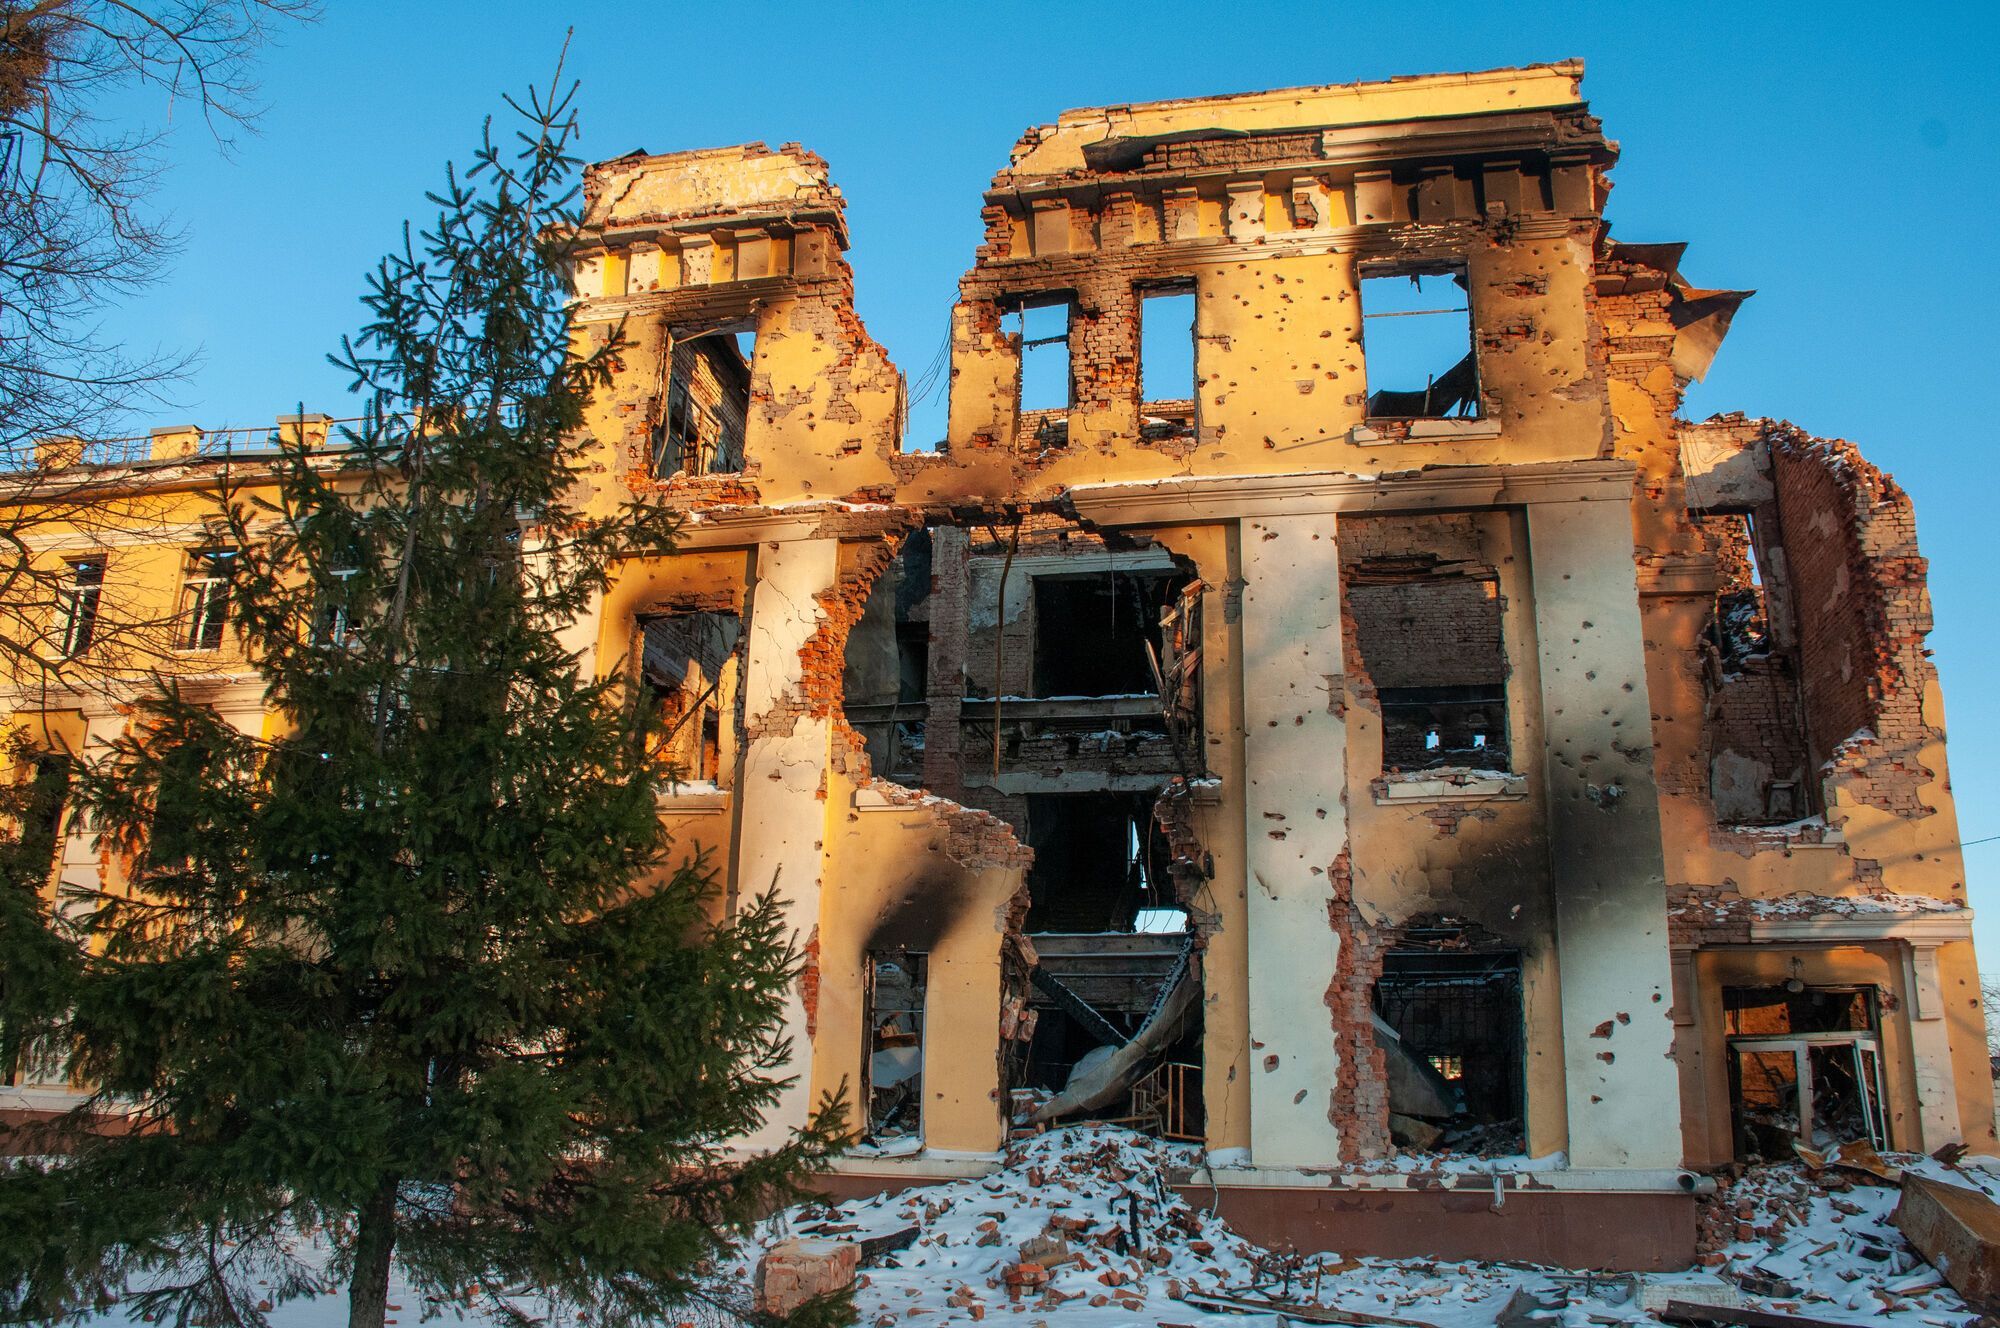 Разрушенные здания, сгоревшие авто и дым: как выглядит Харьков после бомбардировок. Фото и видео